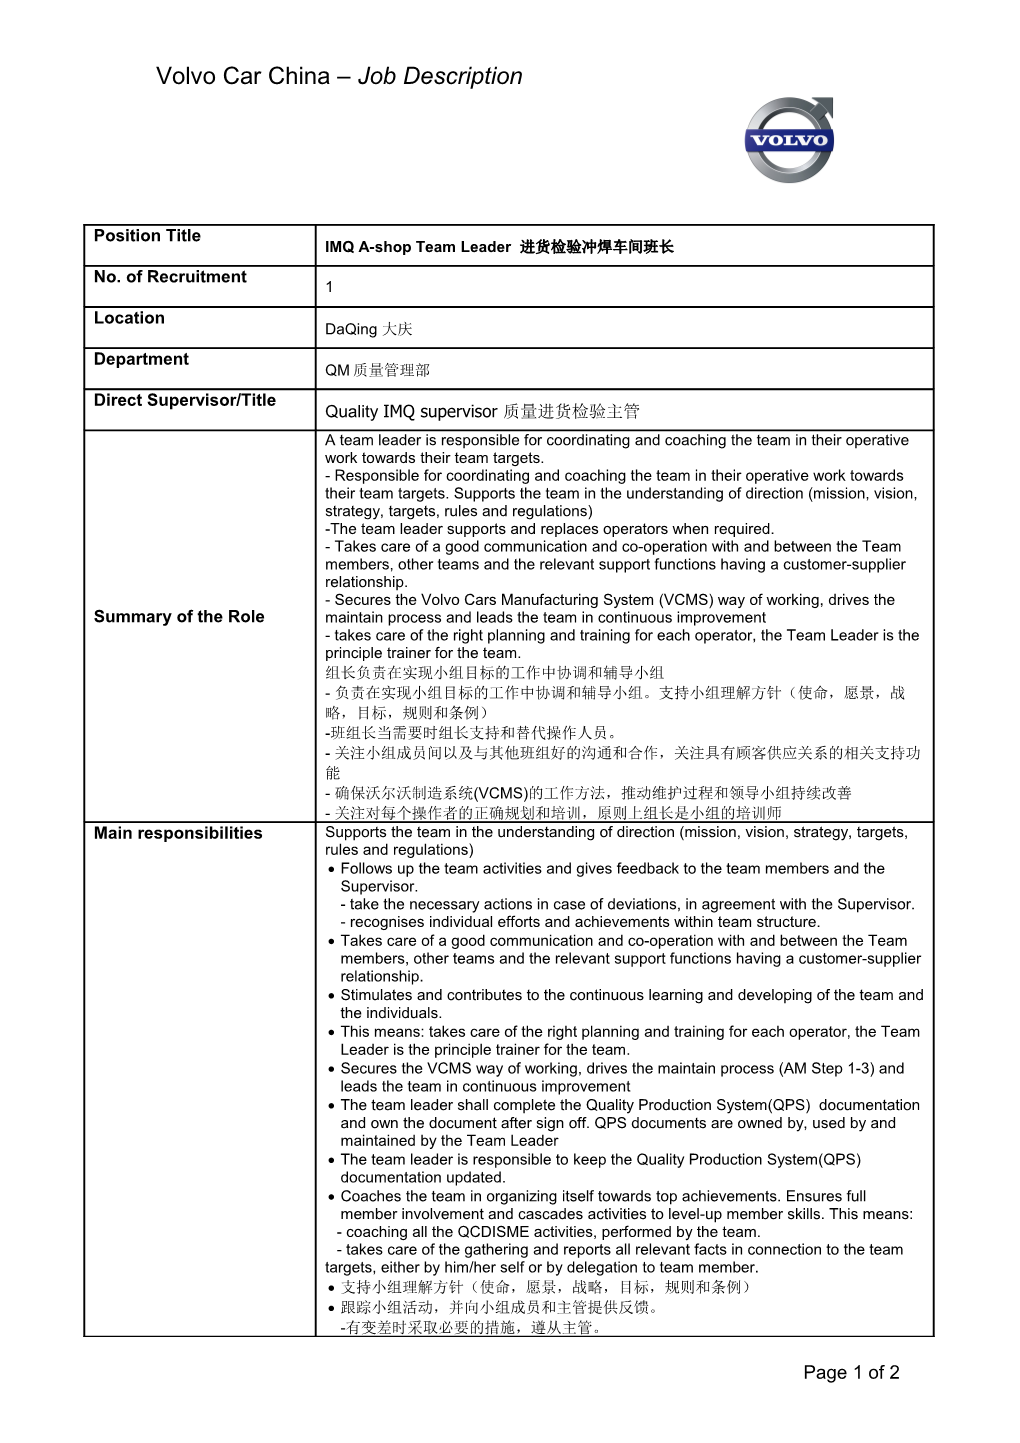 Volvo Car China Job Description